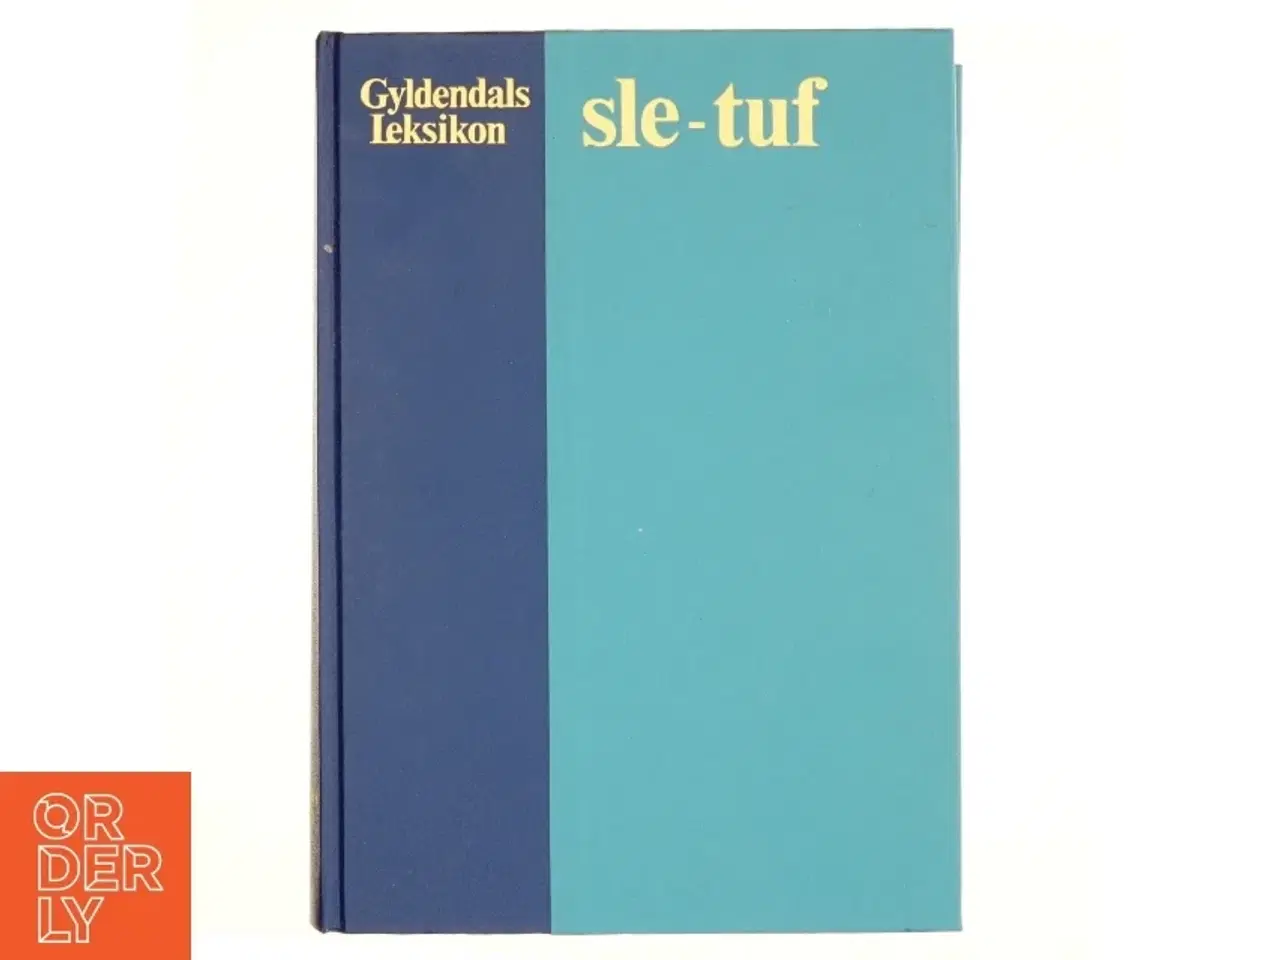 Billede 1 - Gyldendals leksikon, sle-tuf